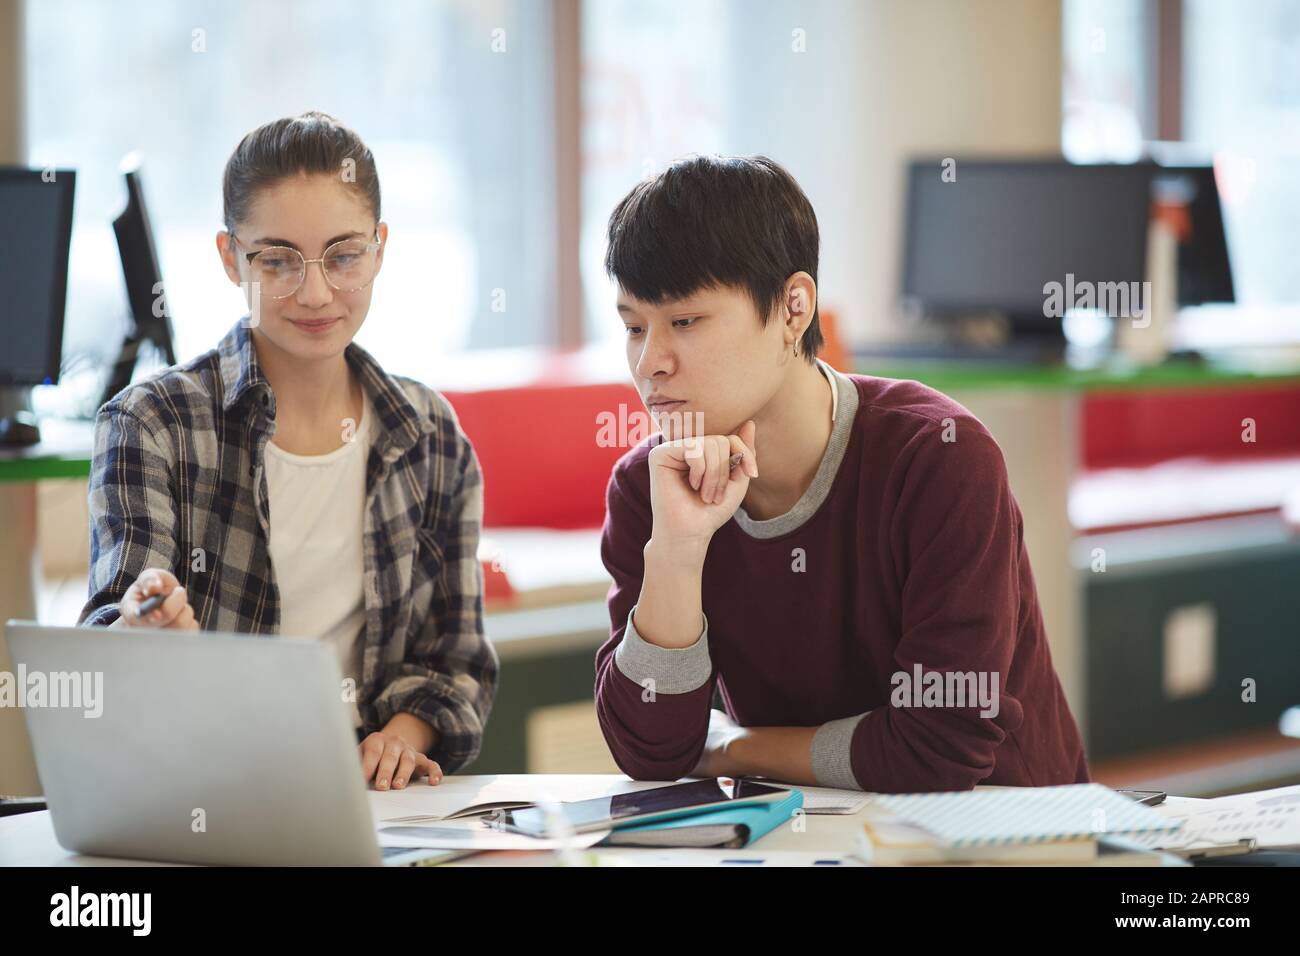 Junge Frau in legerer Kleidung, die auf den Laptop zeigt und dem jungen Mann nach dem Unterricht etwas neues Material erklärt Stockfoto